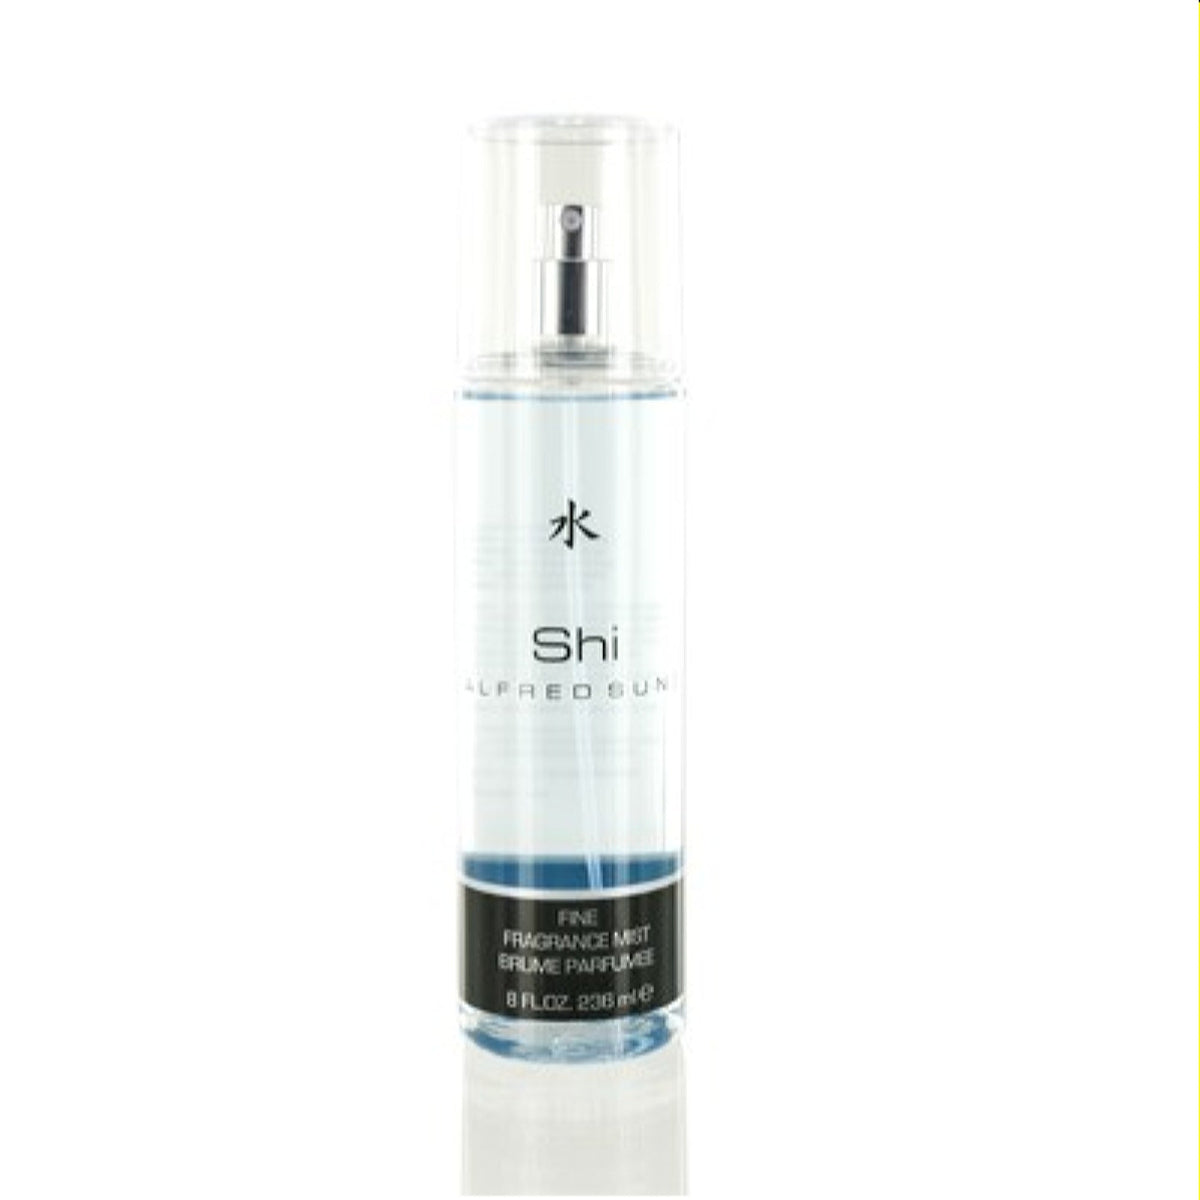 Shi Alfred Sung Body Mist Spray 8.0 Oz (240 Ml) For Women  A0106468